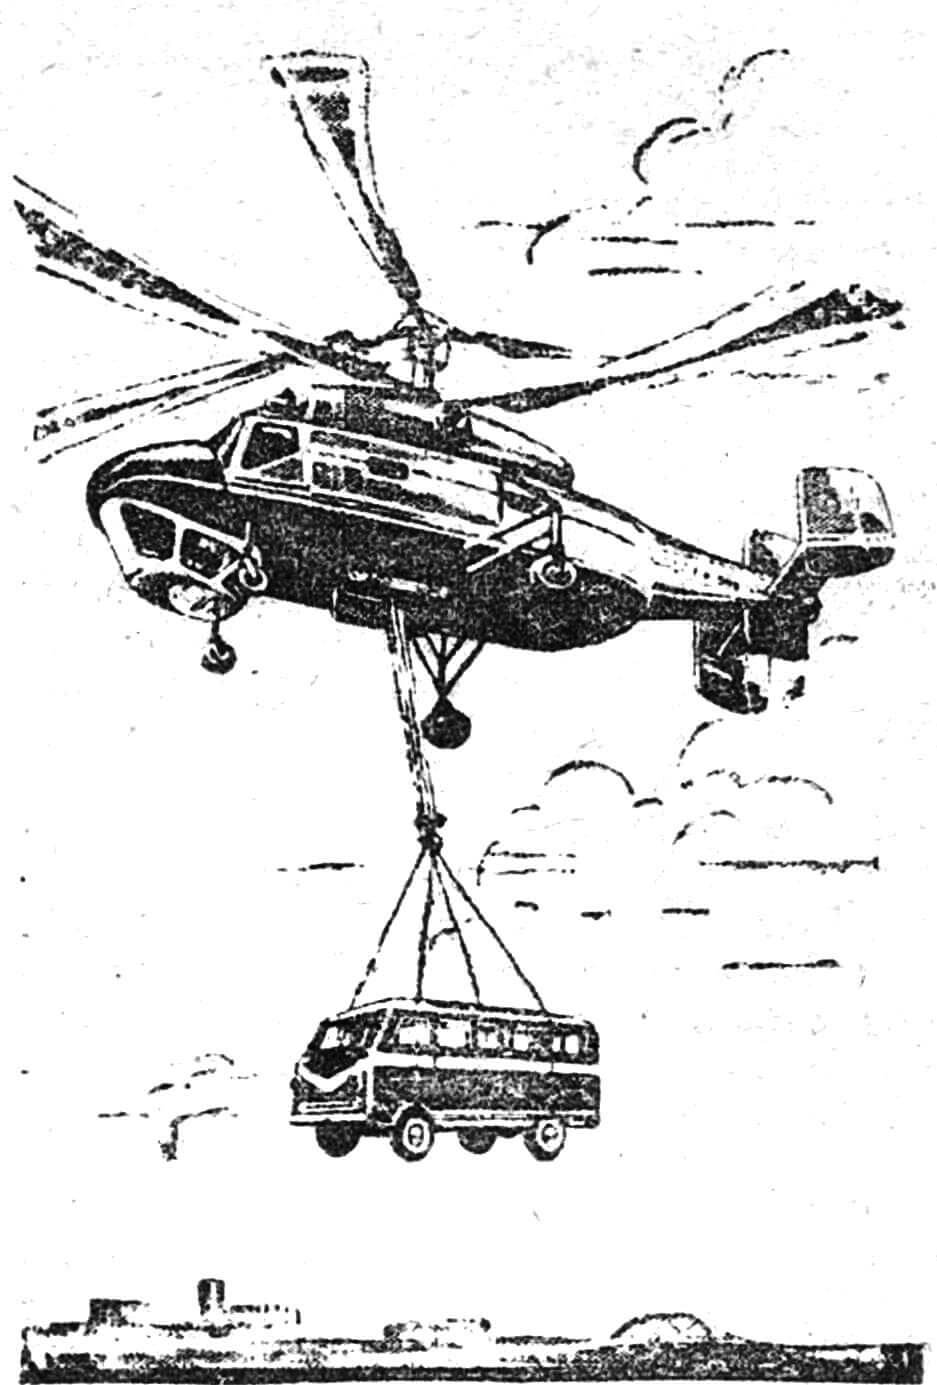 Транспортный вертолет соосной схемы КА-25К